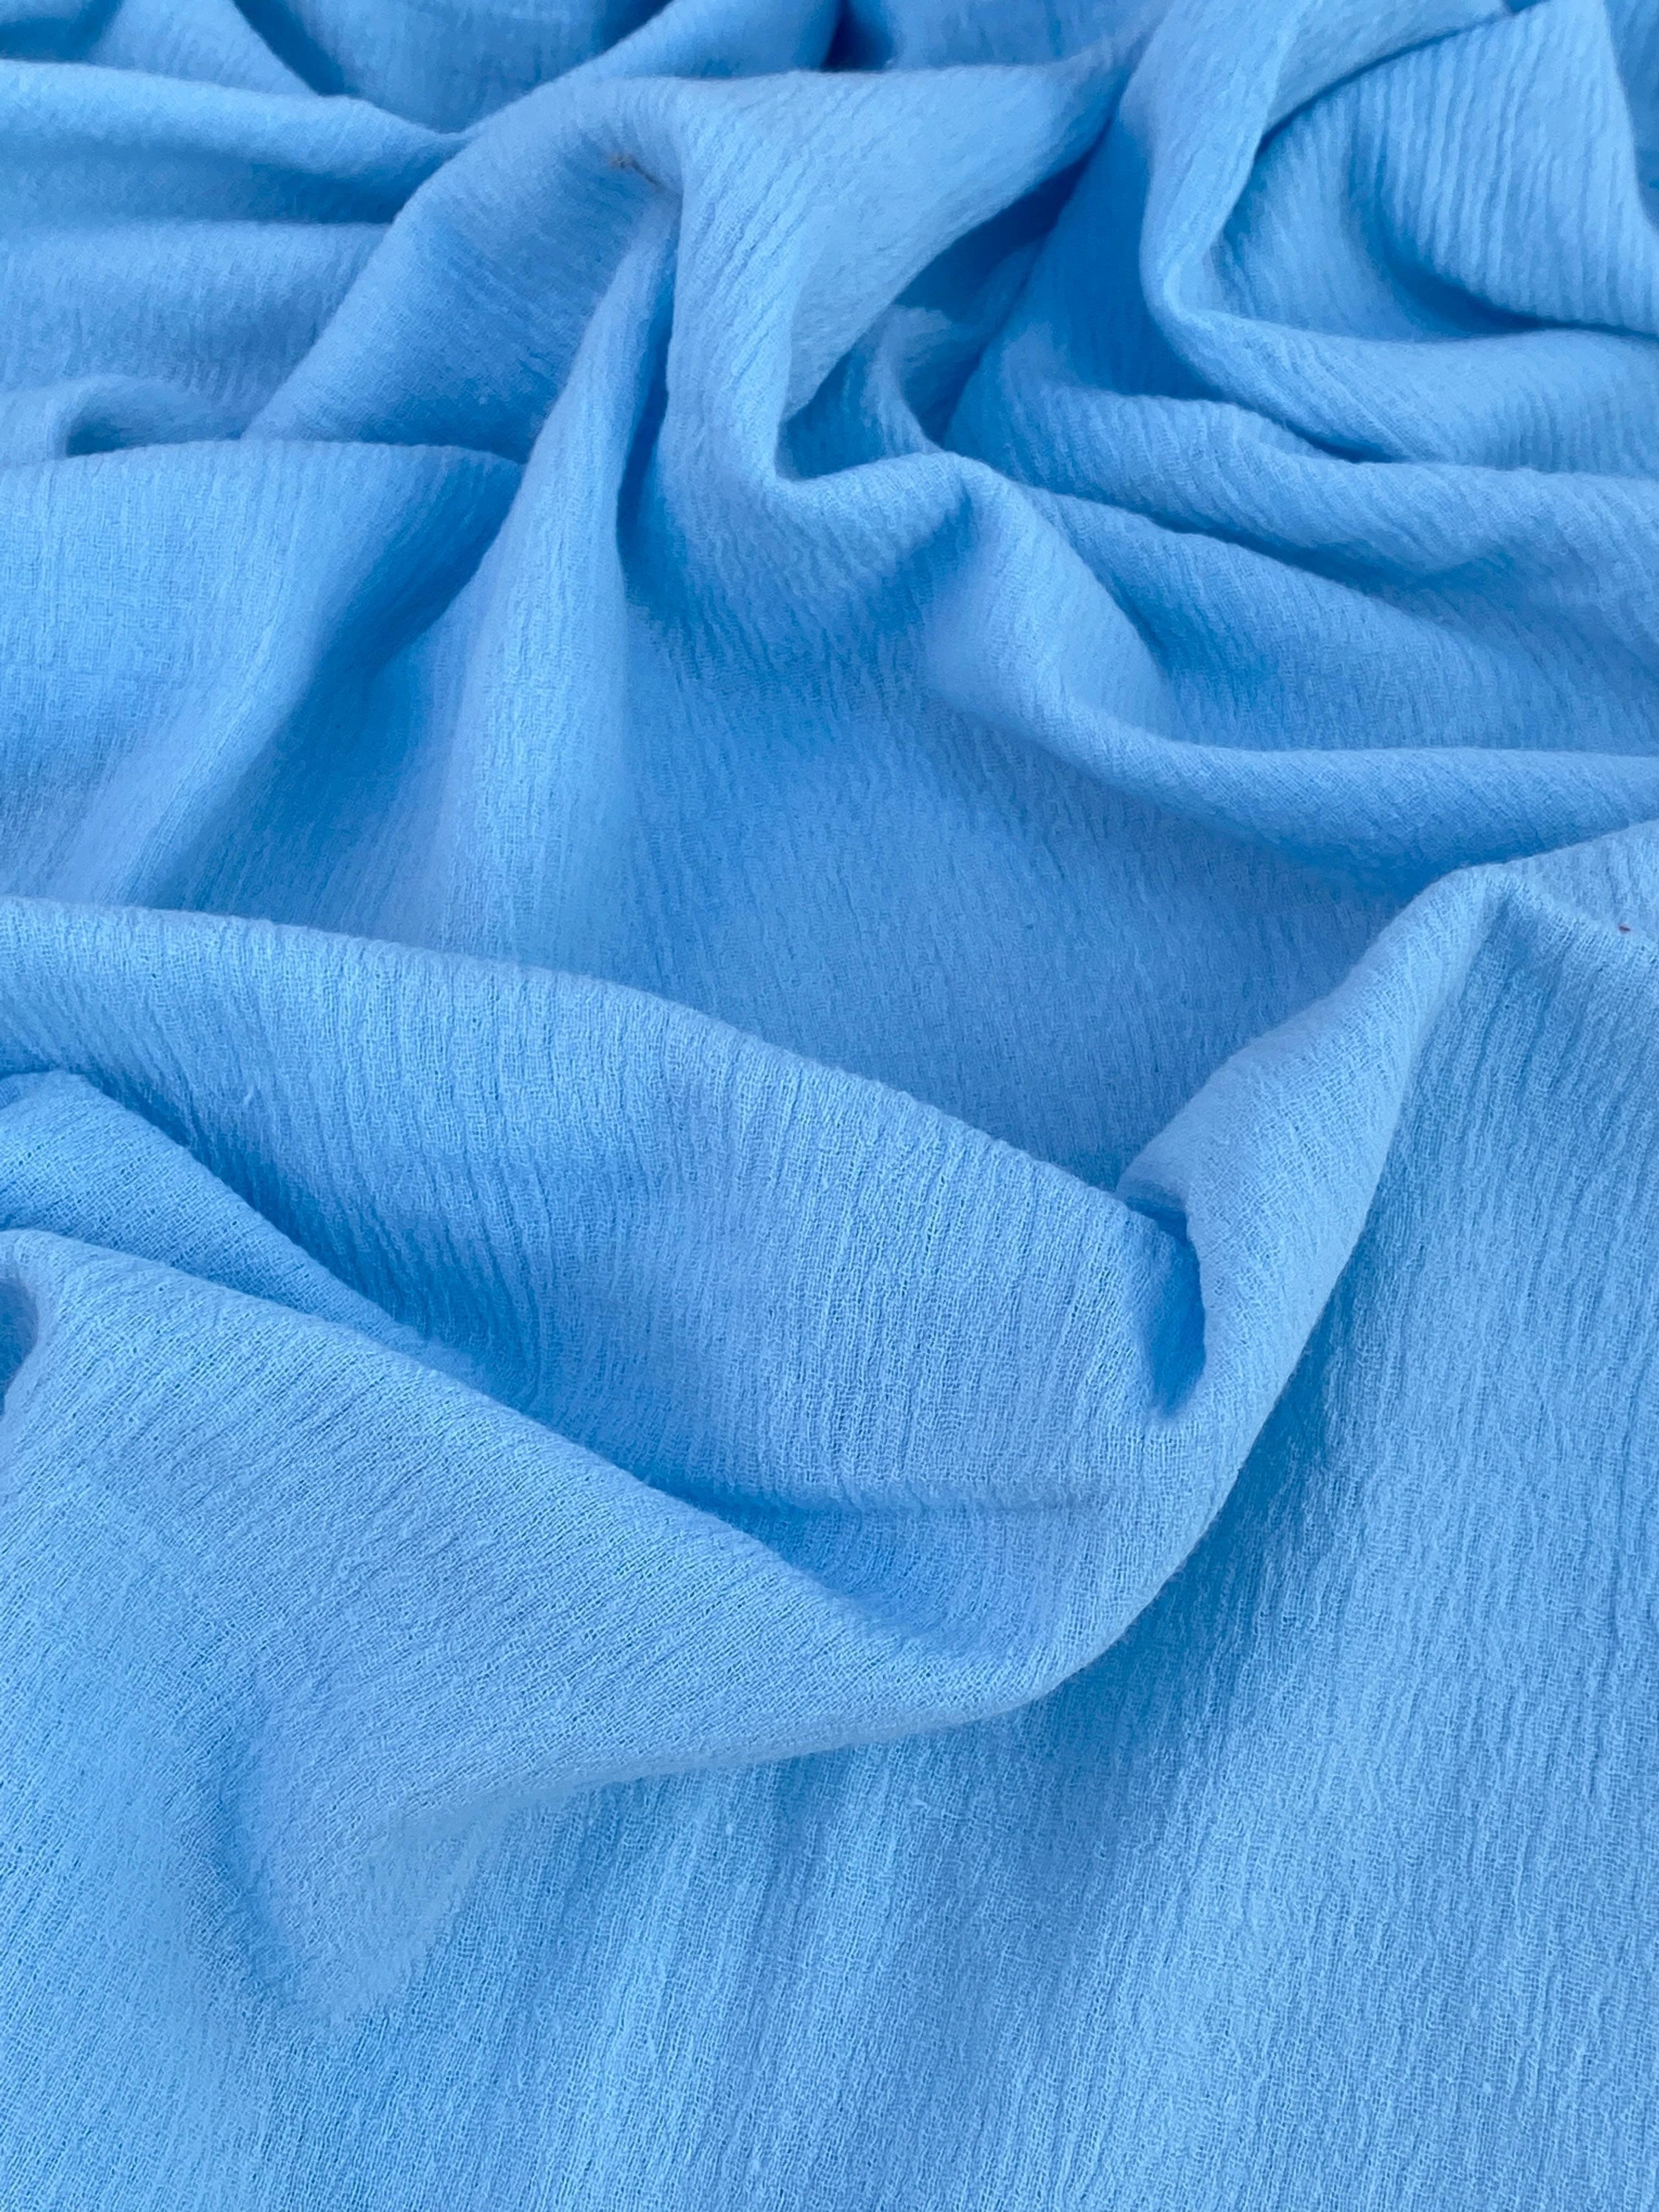 light blue Cotton Gauze, cotton gauze fabric, baby blue gauze fabric, dark blue gauze, cotton for woman, double gauze cheap, coton gauze for bride, cotton gauze in low price